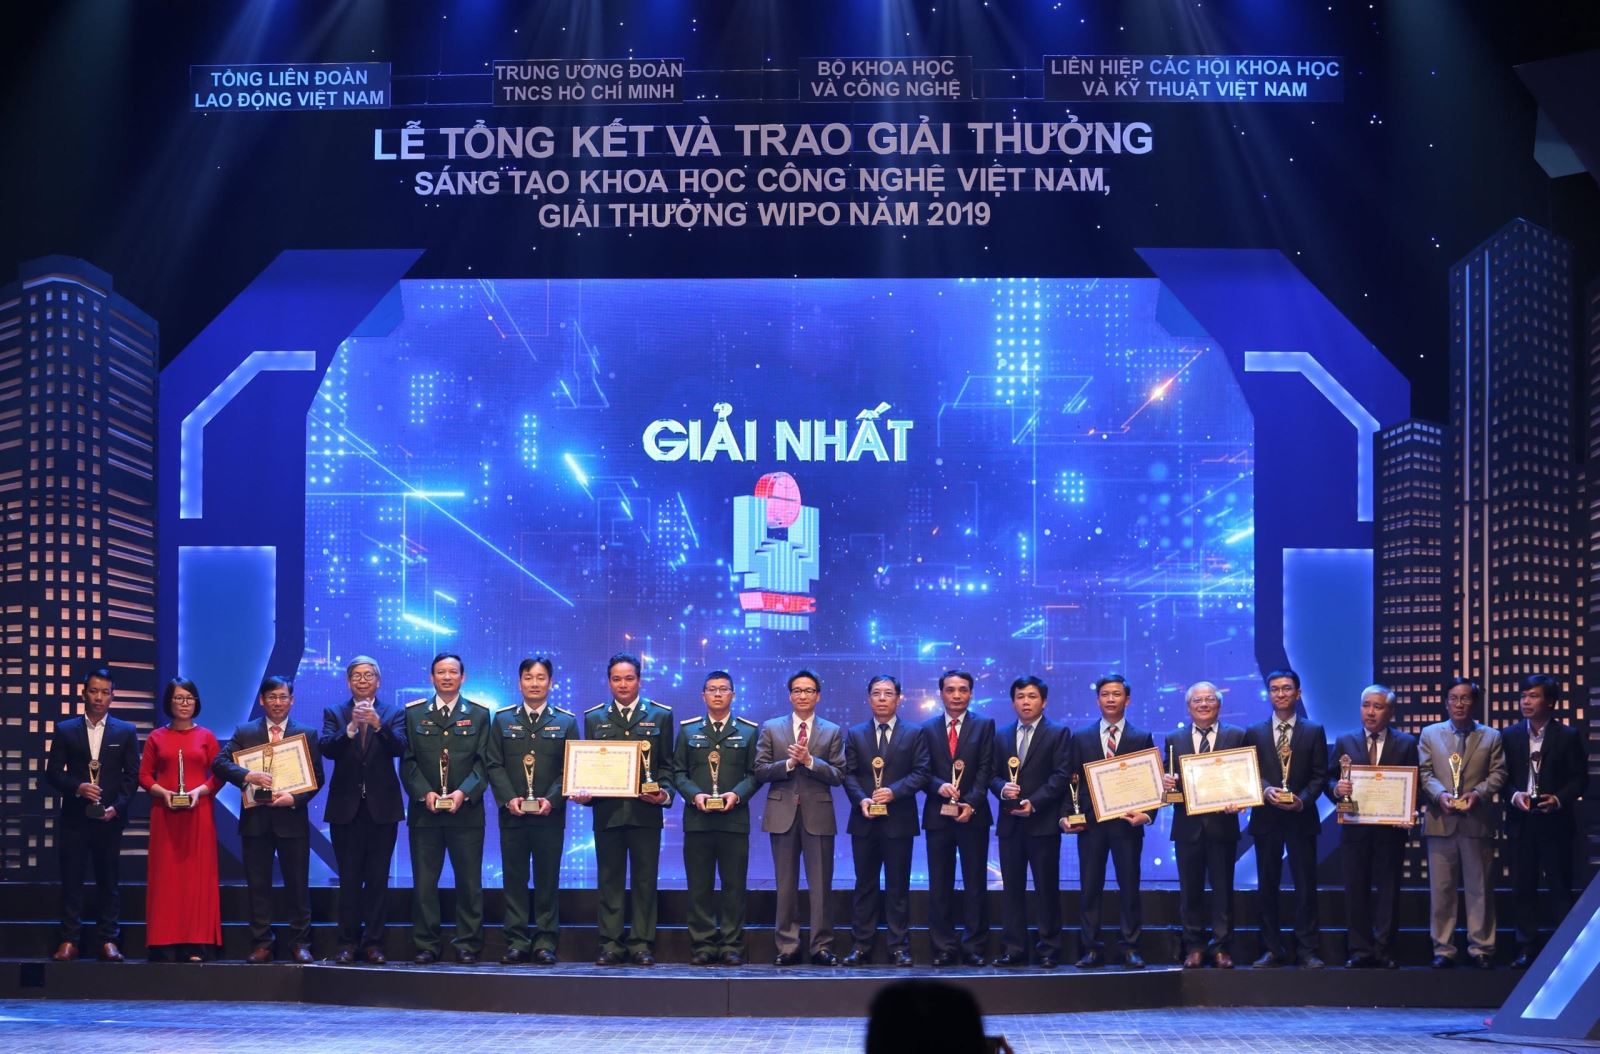 Trao Giải thưởng sáng tạo khoa học công nghệ Việt Nam, Giải thưởng WIPO năm 2019